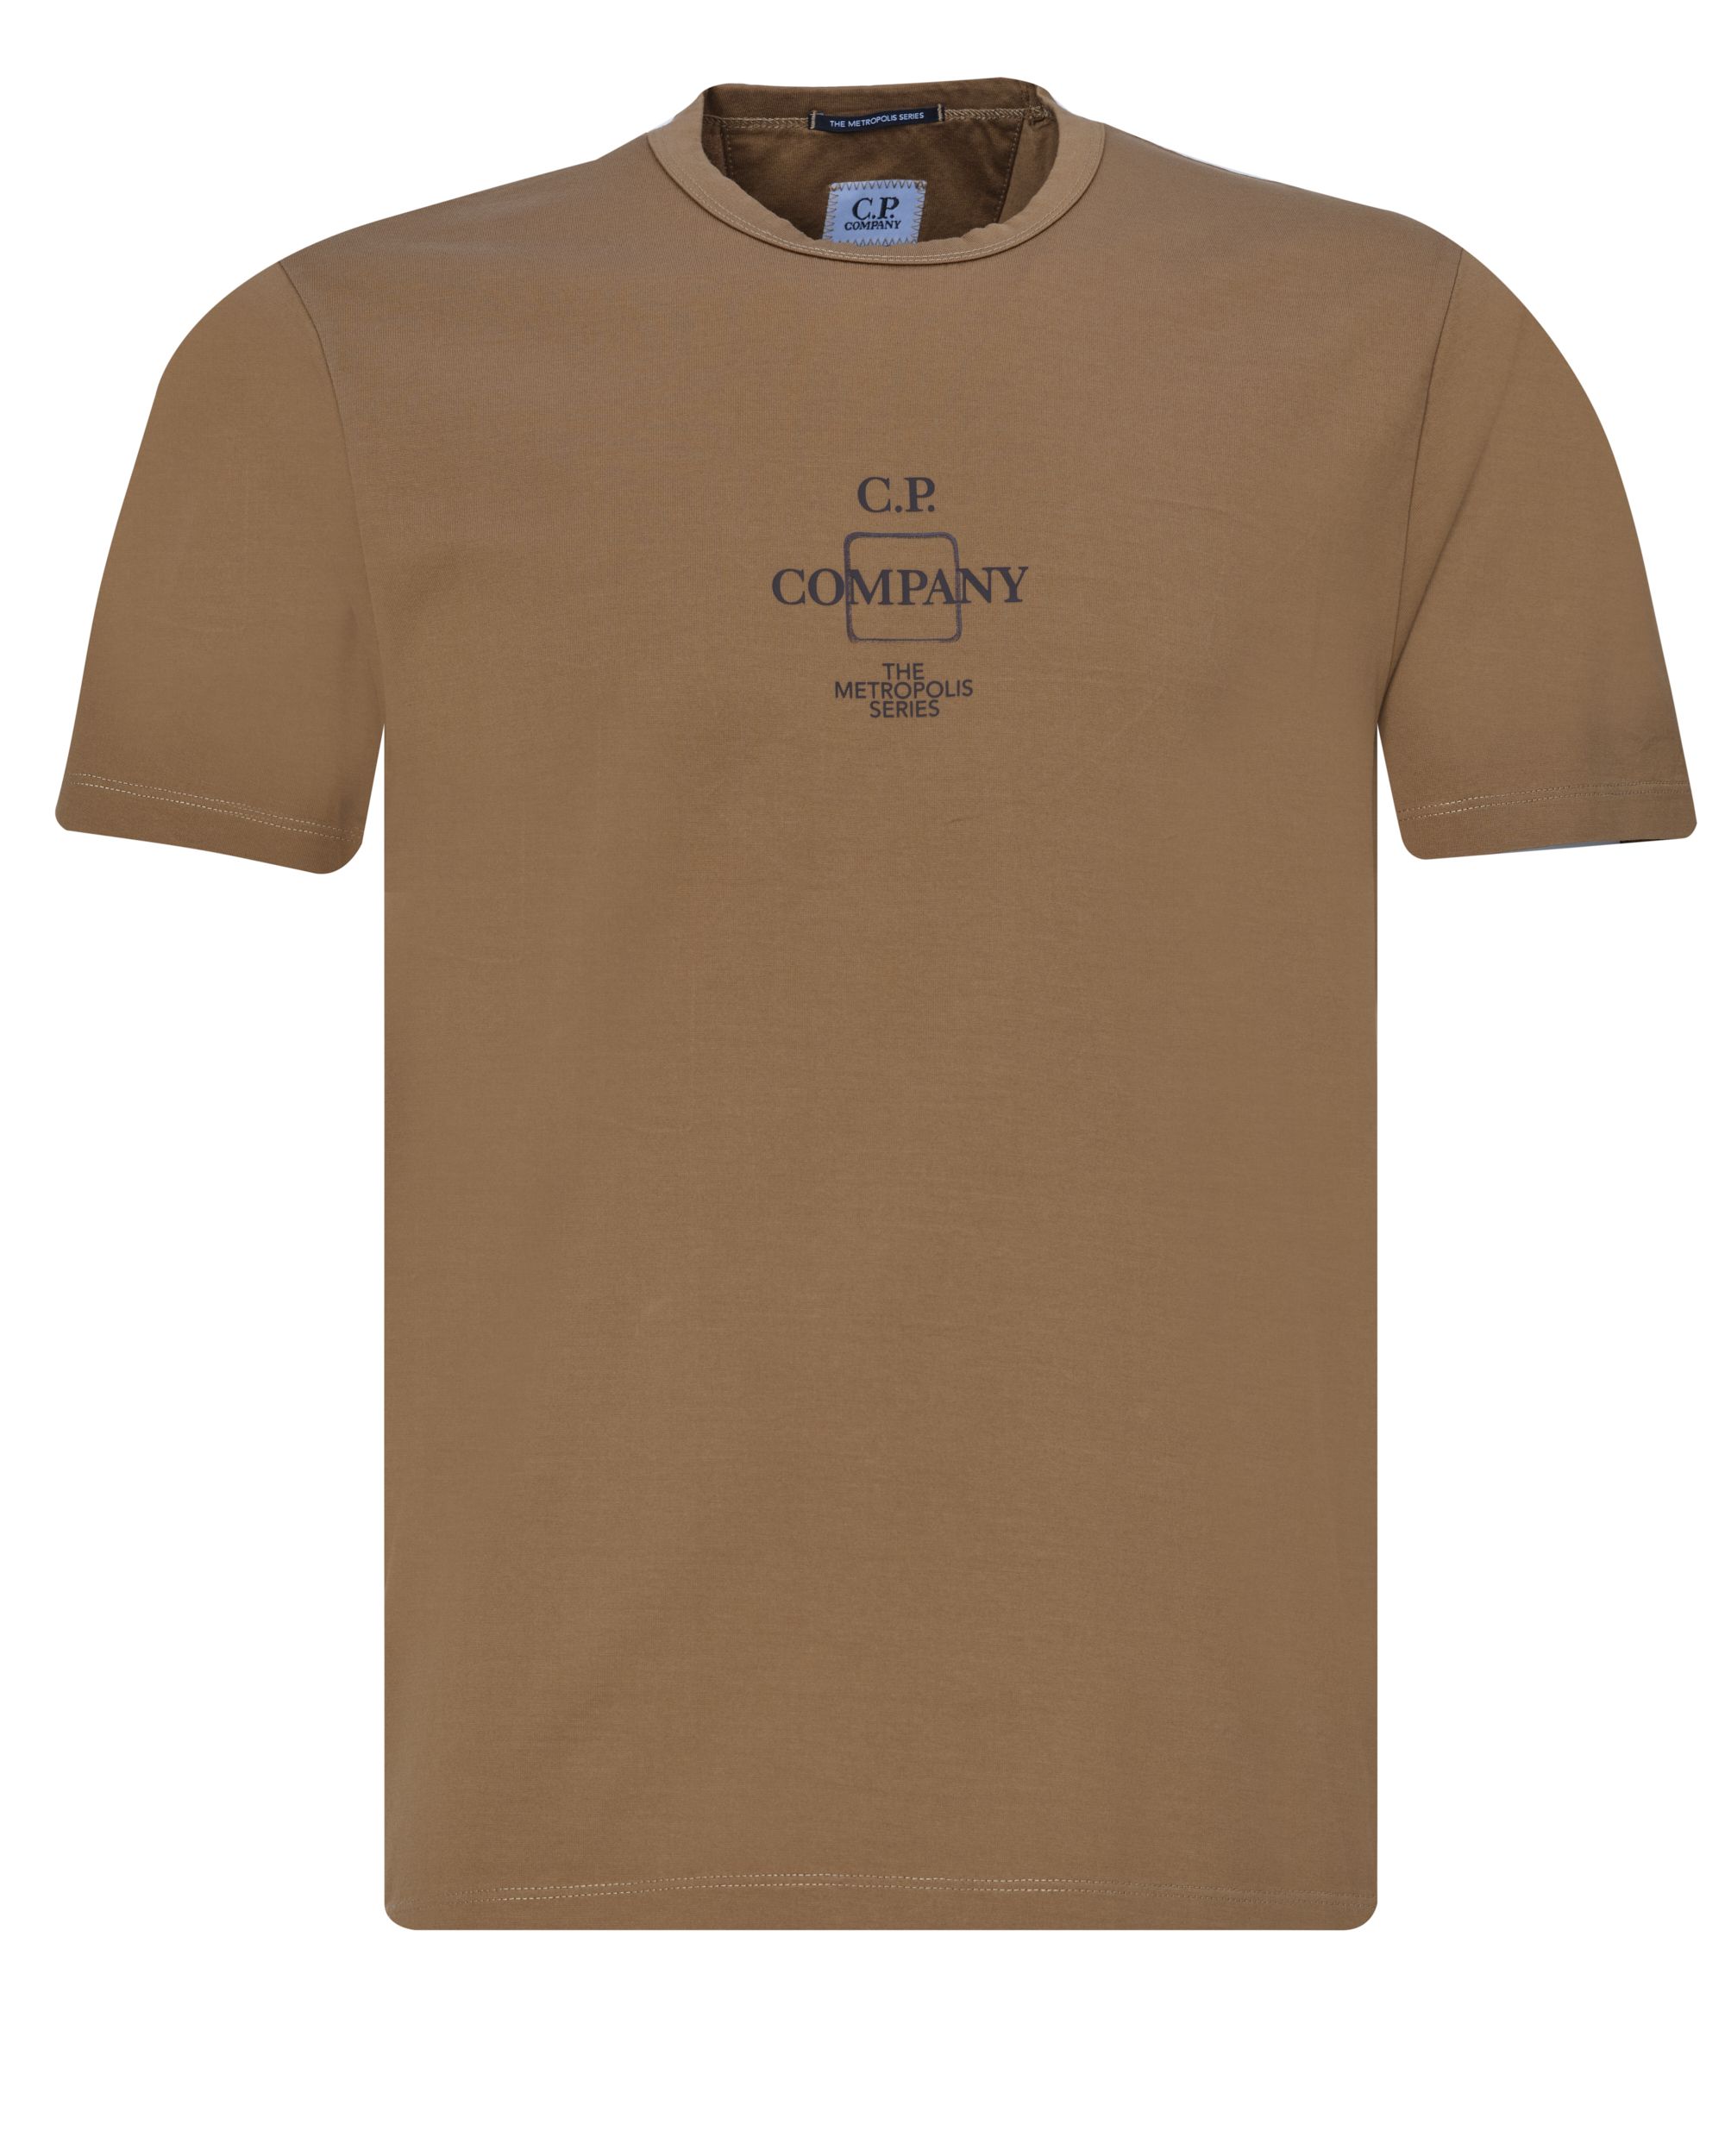 C.P Company T-shirt KM Khaki 078937-002-L